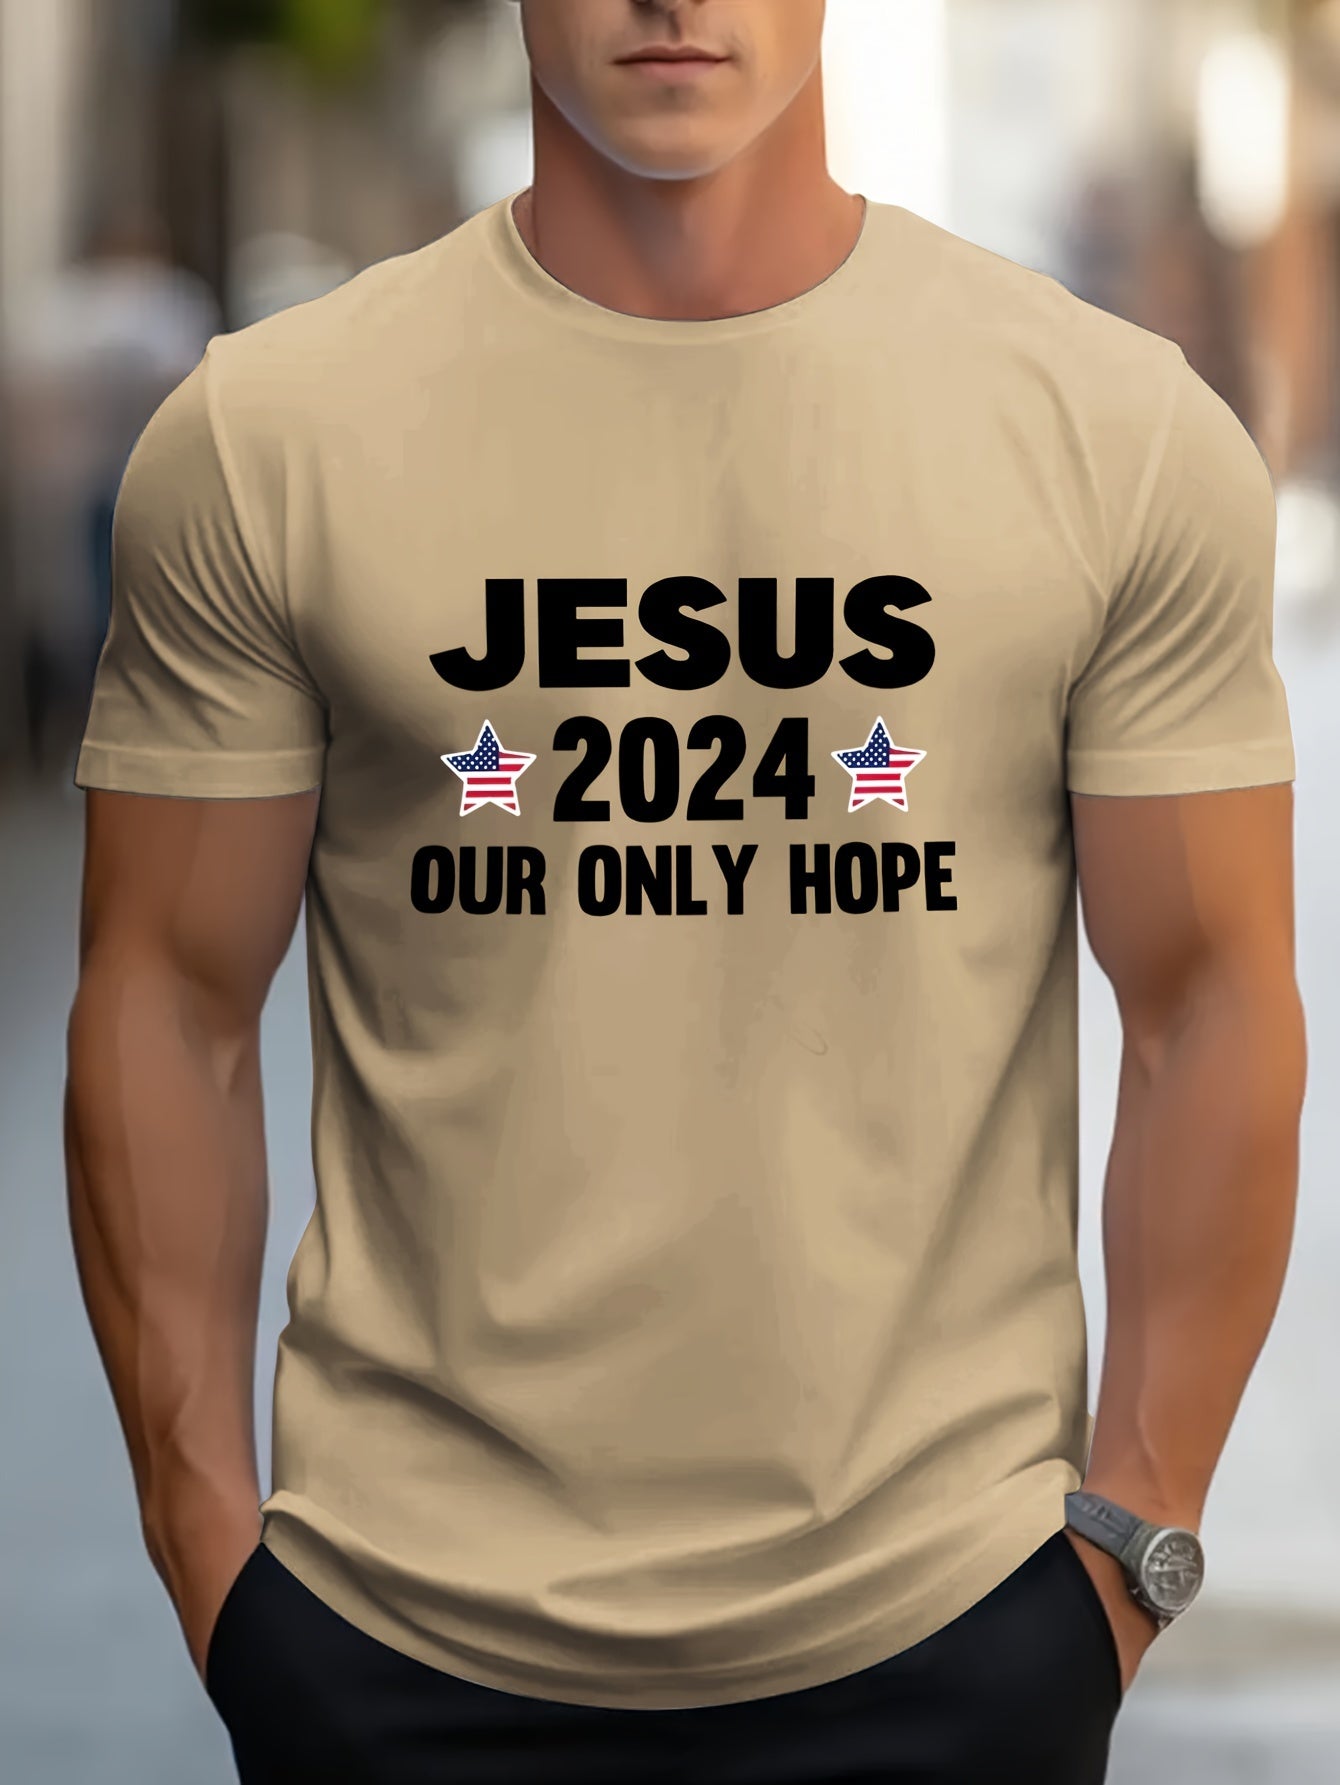 JESUS 2024 Our Only Hope Men's Christian T-shirt claimedbygoddesigns